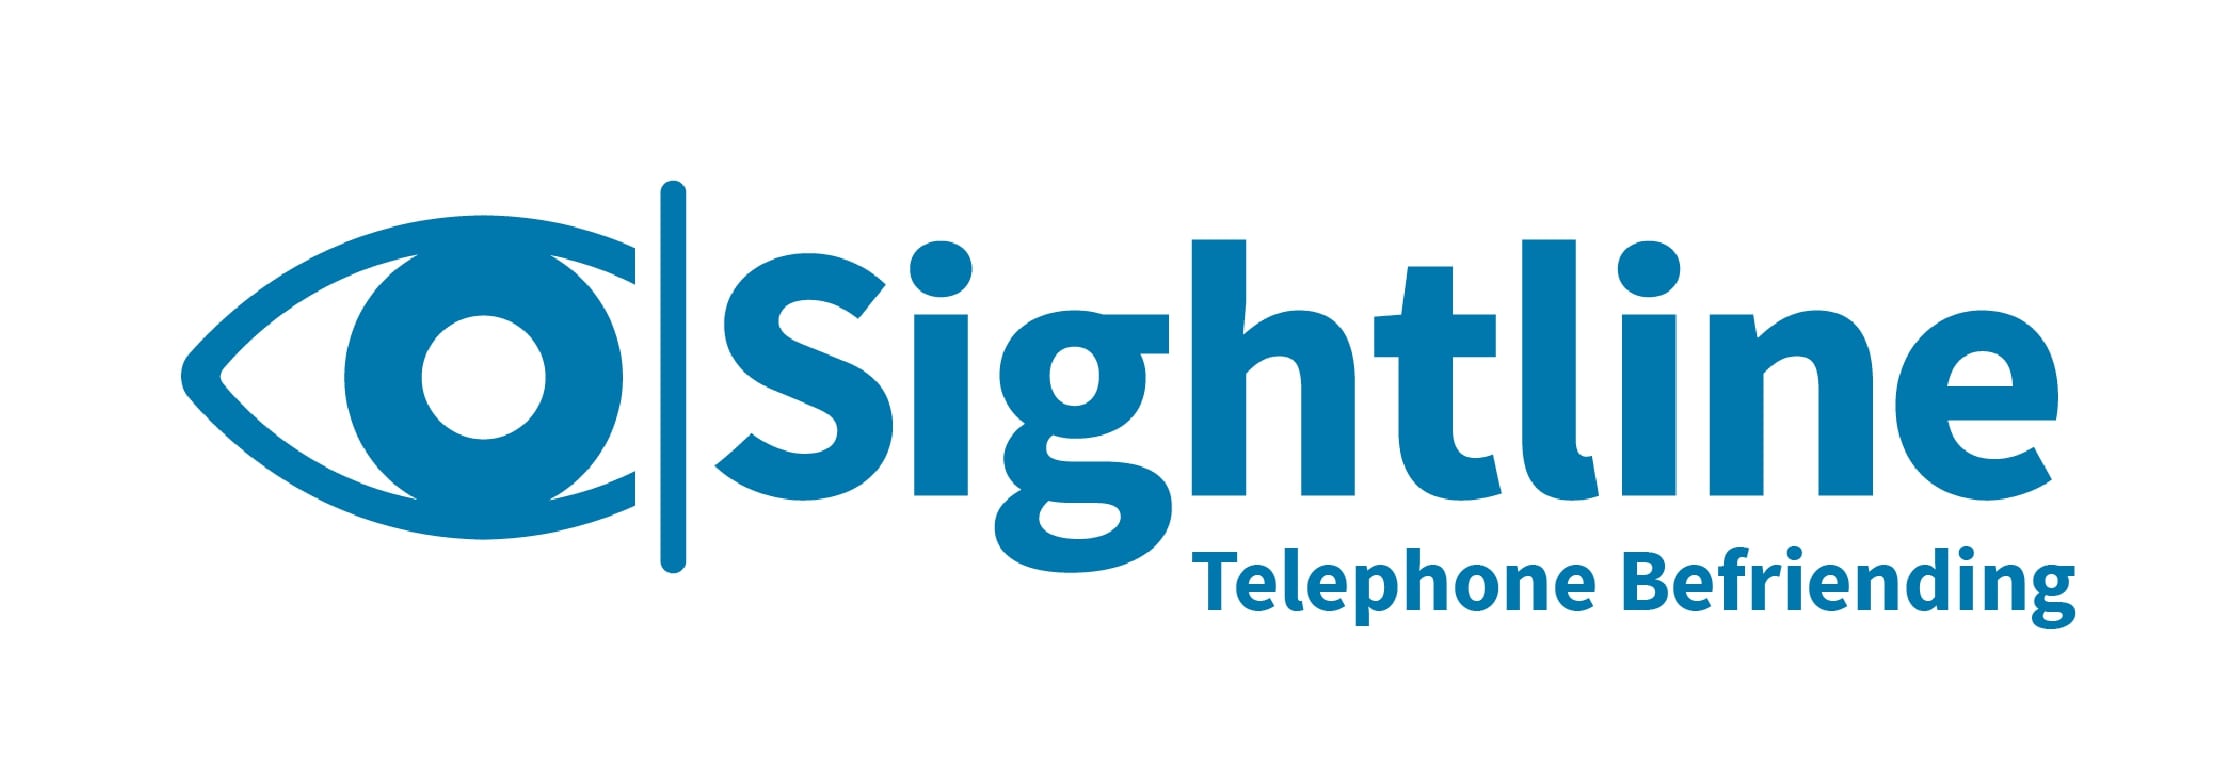 Sightline logo - Telephone Befriending